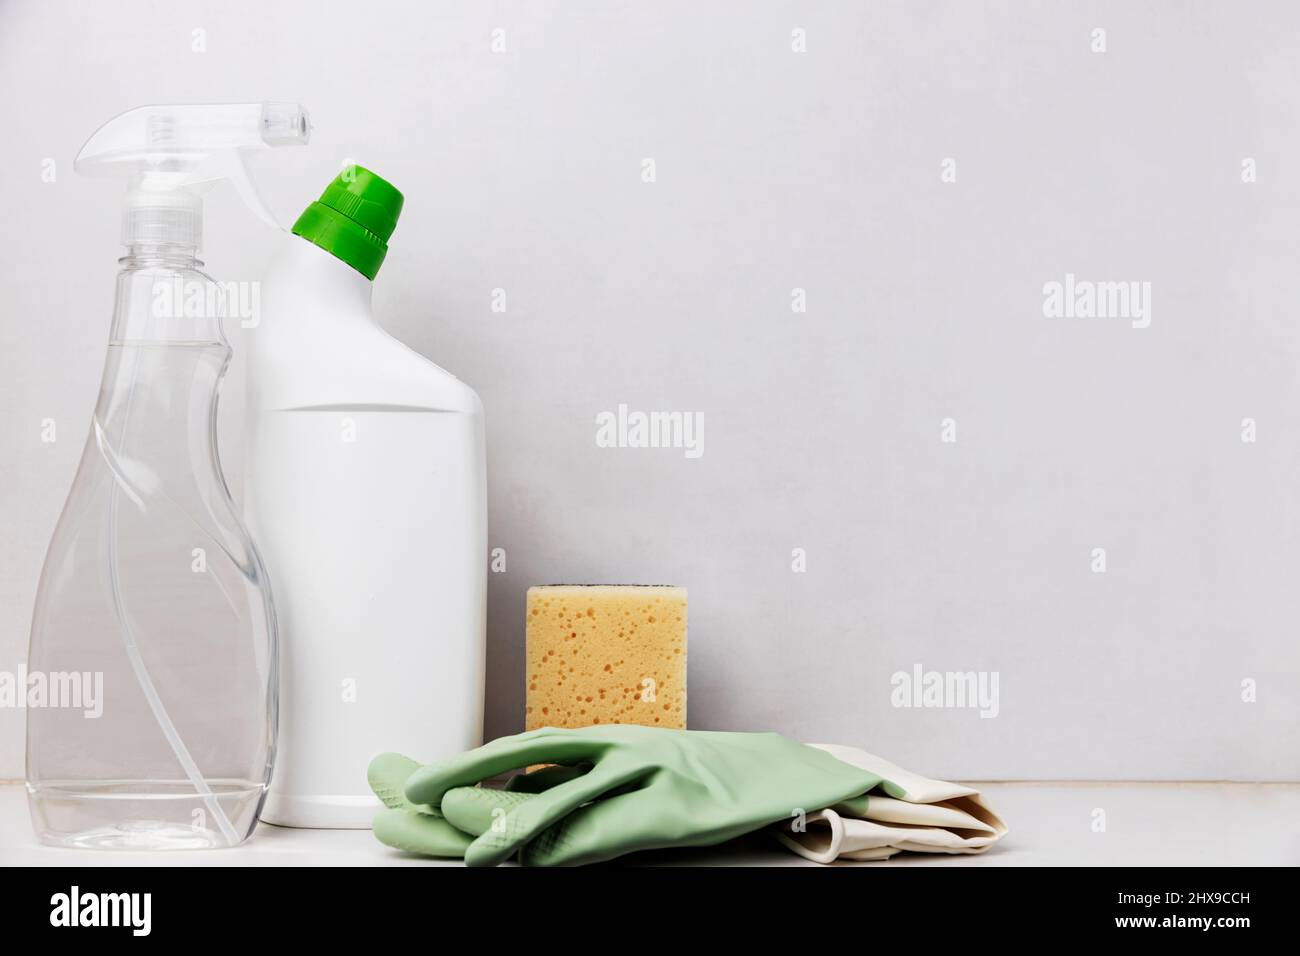 Hausreinigung, Housekeeping-Konzept. Weiße WC-Reinigungsflasche, transparenter Spender-Fensterreiniger, Sanitärware, Waschlappen und grüne Schutzhandschuhe für Hausfrau auf dem Tisch, grauer Hintergrund Stockfoto